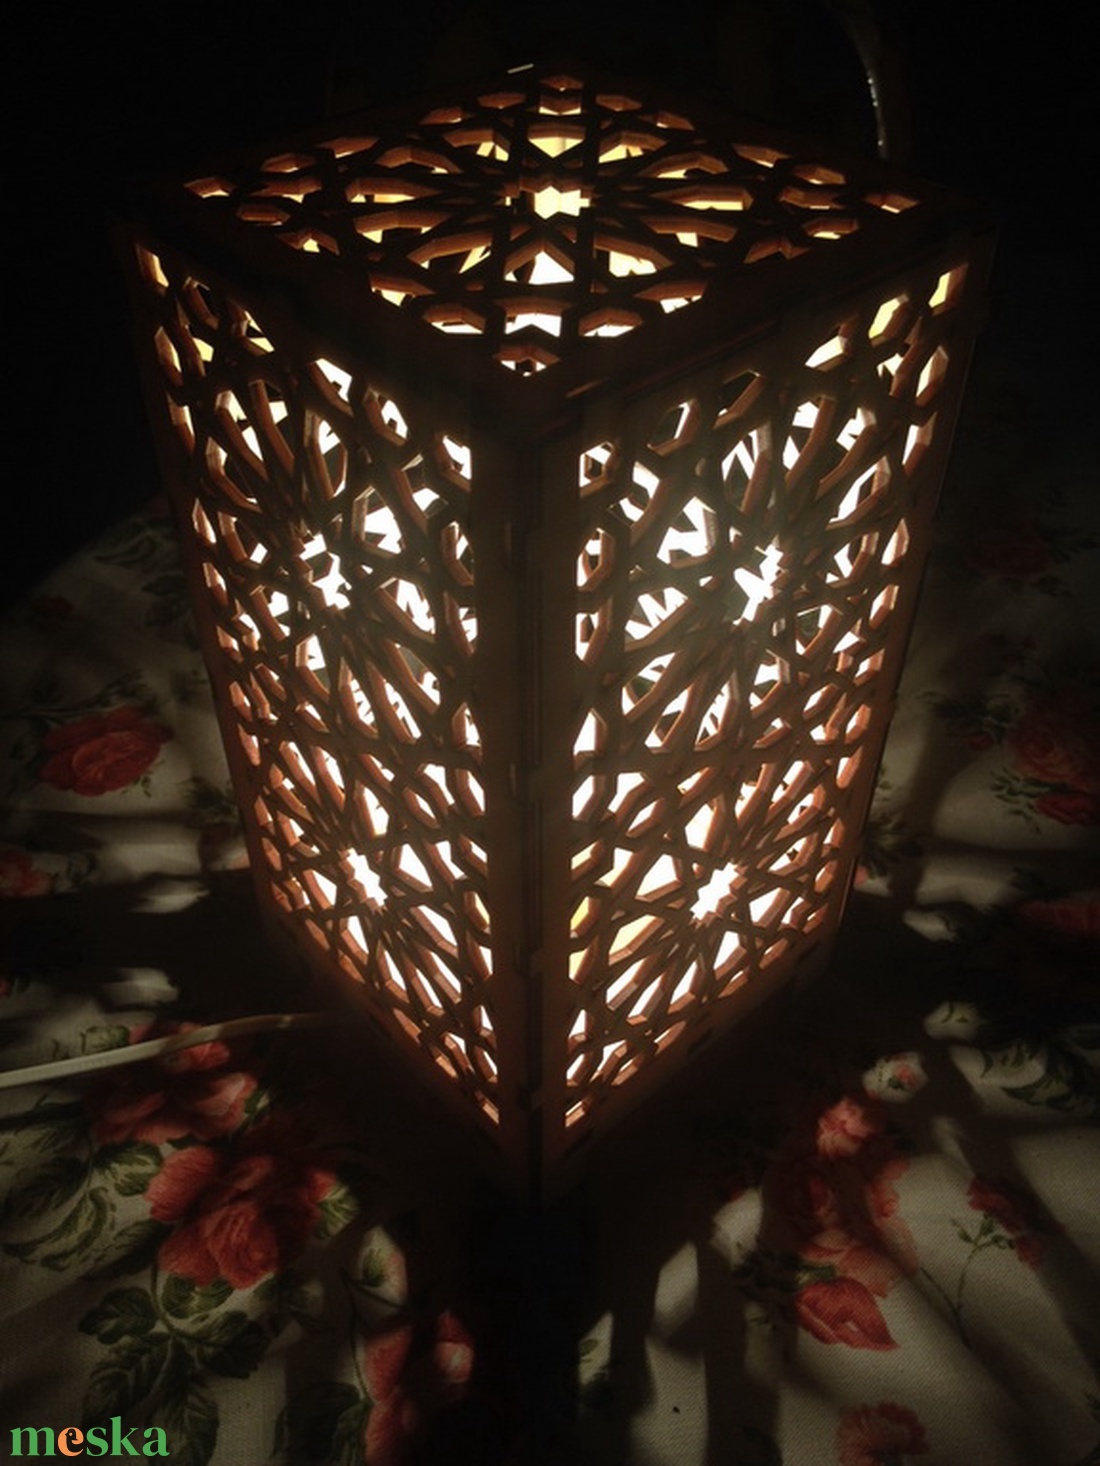 Marokkói mintás asztali lámpa, hangulatvilágítás - otthon & lakás - lámpa - hangulatlámpa - Meska.hu